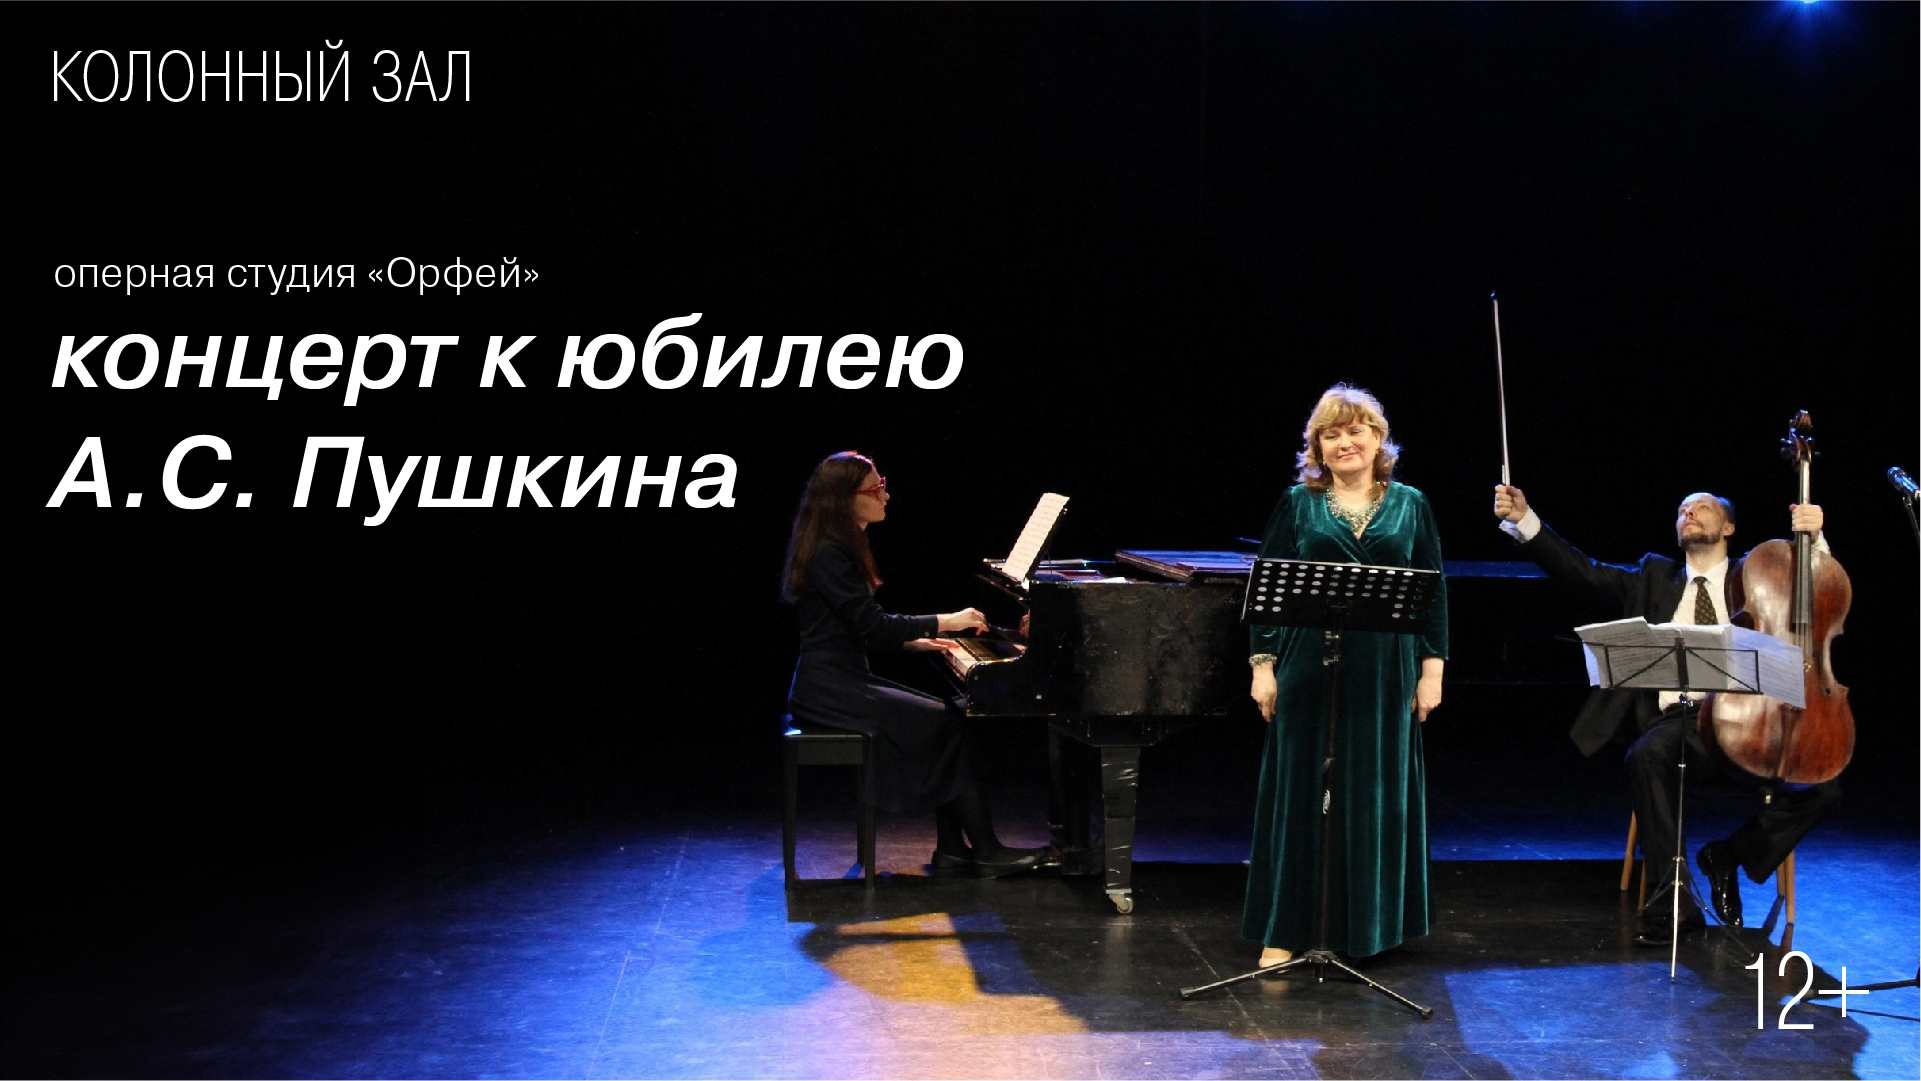 Концерт оперной студии «Орфей»<br>к юбилею А. С. Пушкина